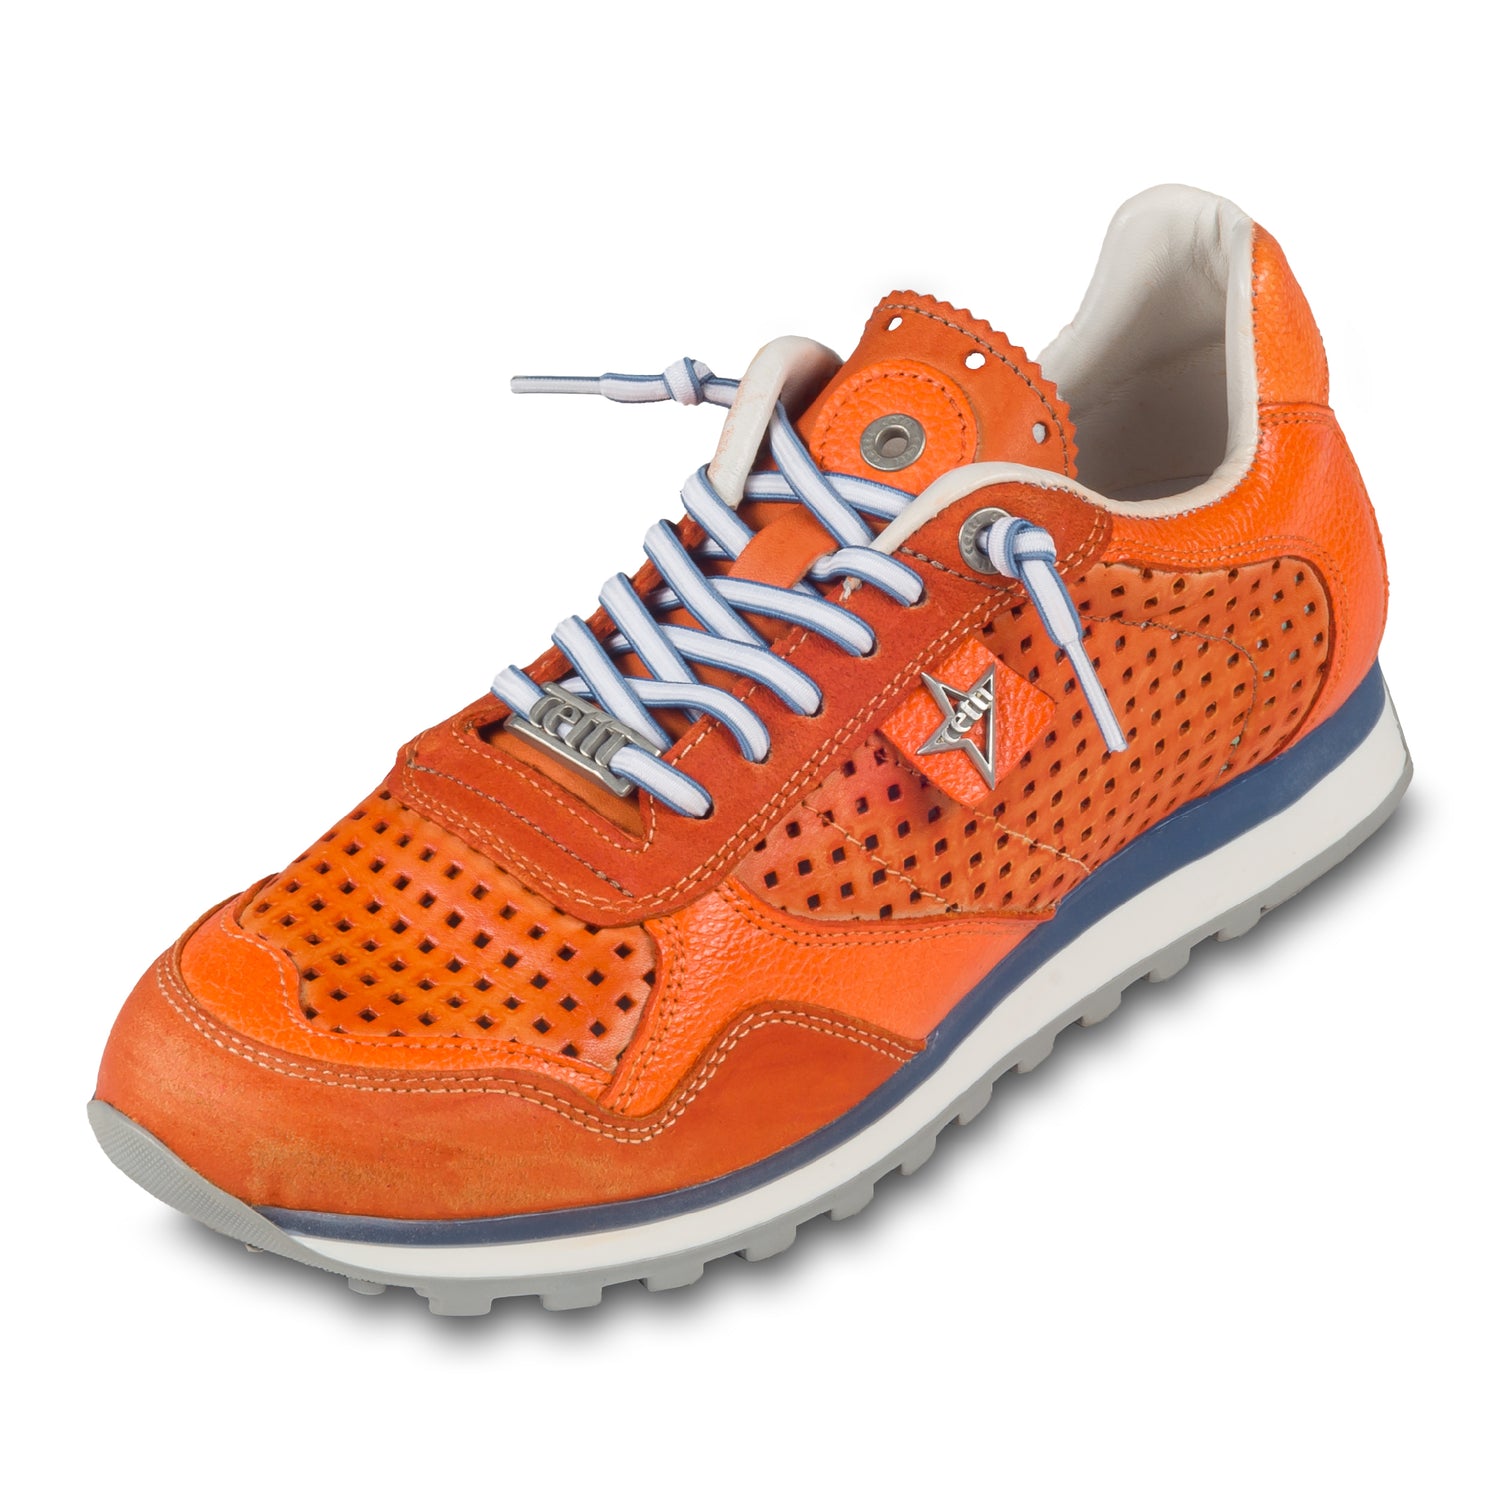 CETTI Herren Leder Sneaker, Modell „C848“ in orange (used tin ambar), Made in Spain. Ansicht der Ferse und Sohlenunterseite. Schräge Ansicht linker Schuh.